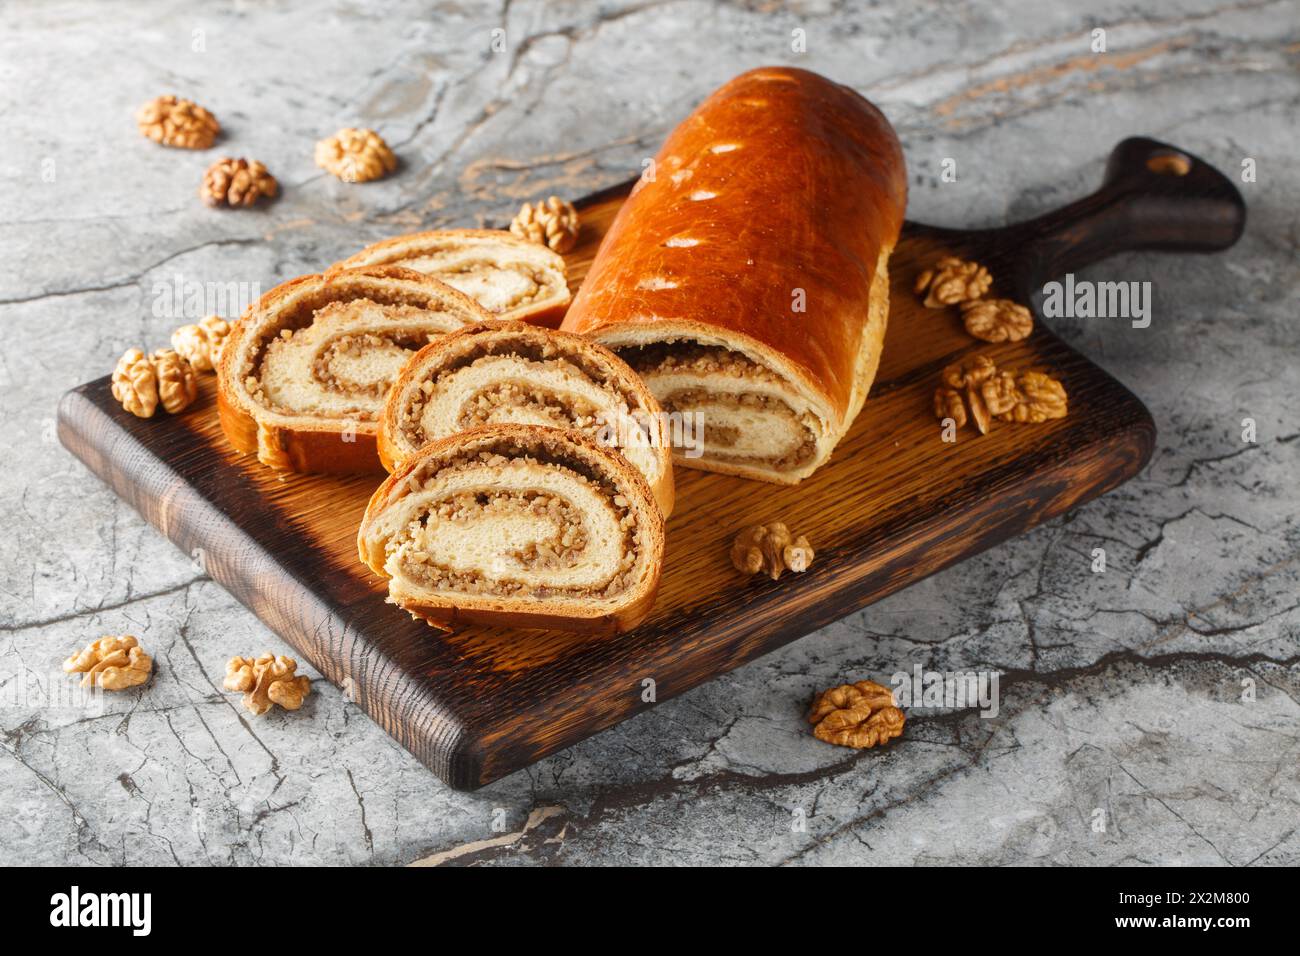 Rouleau de noix festif à base de pâte levée avec des noix et du miel gros plan sur une planche de bois sur la table. Horizontal Banque D'Images